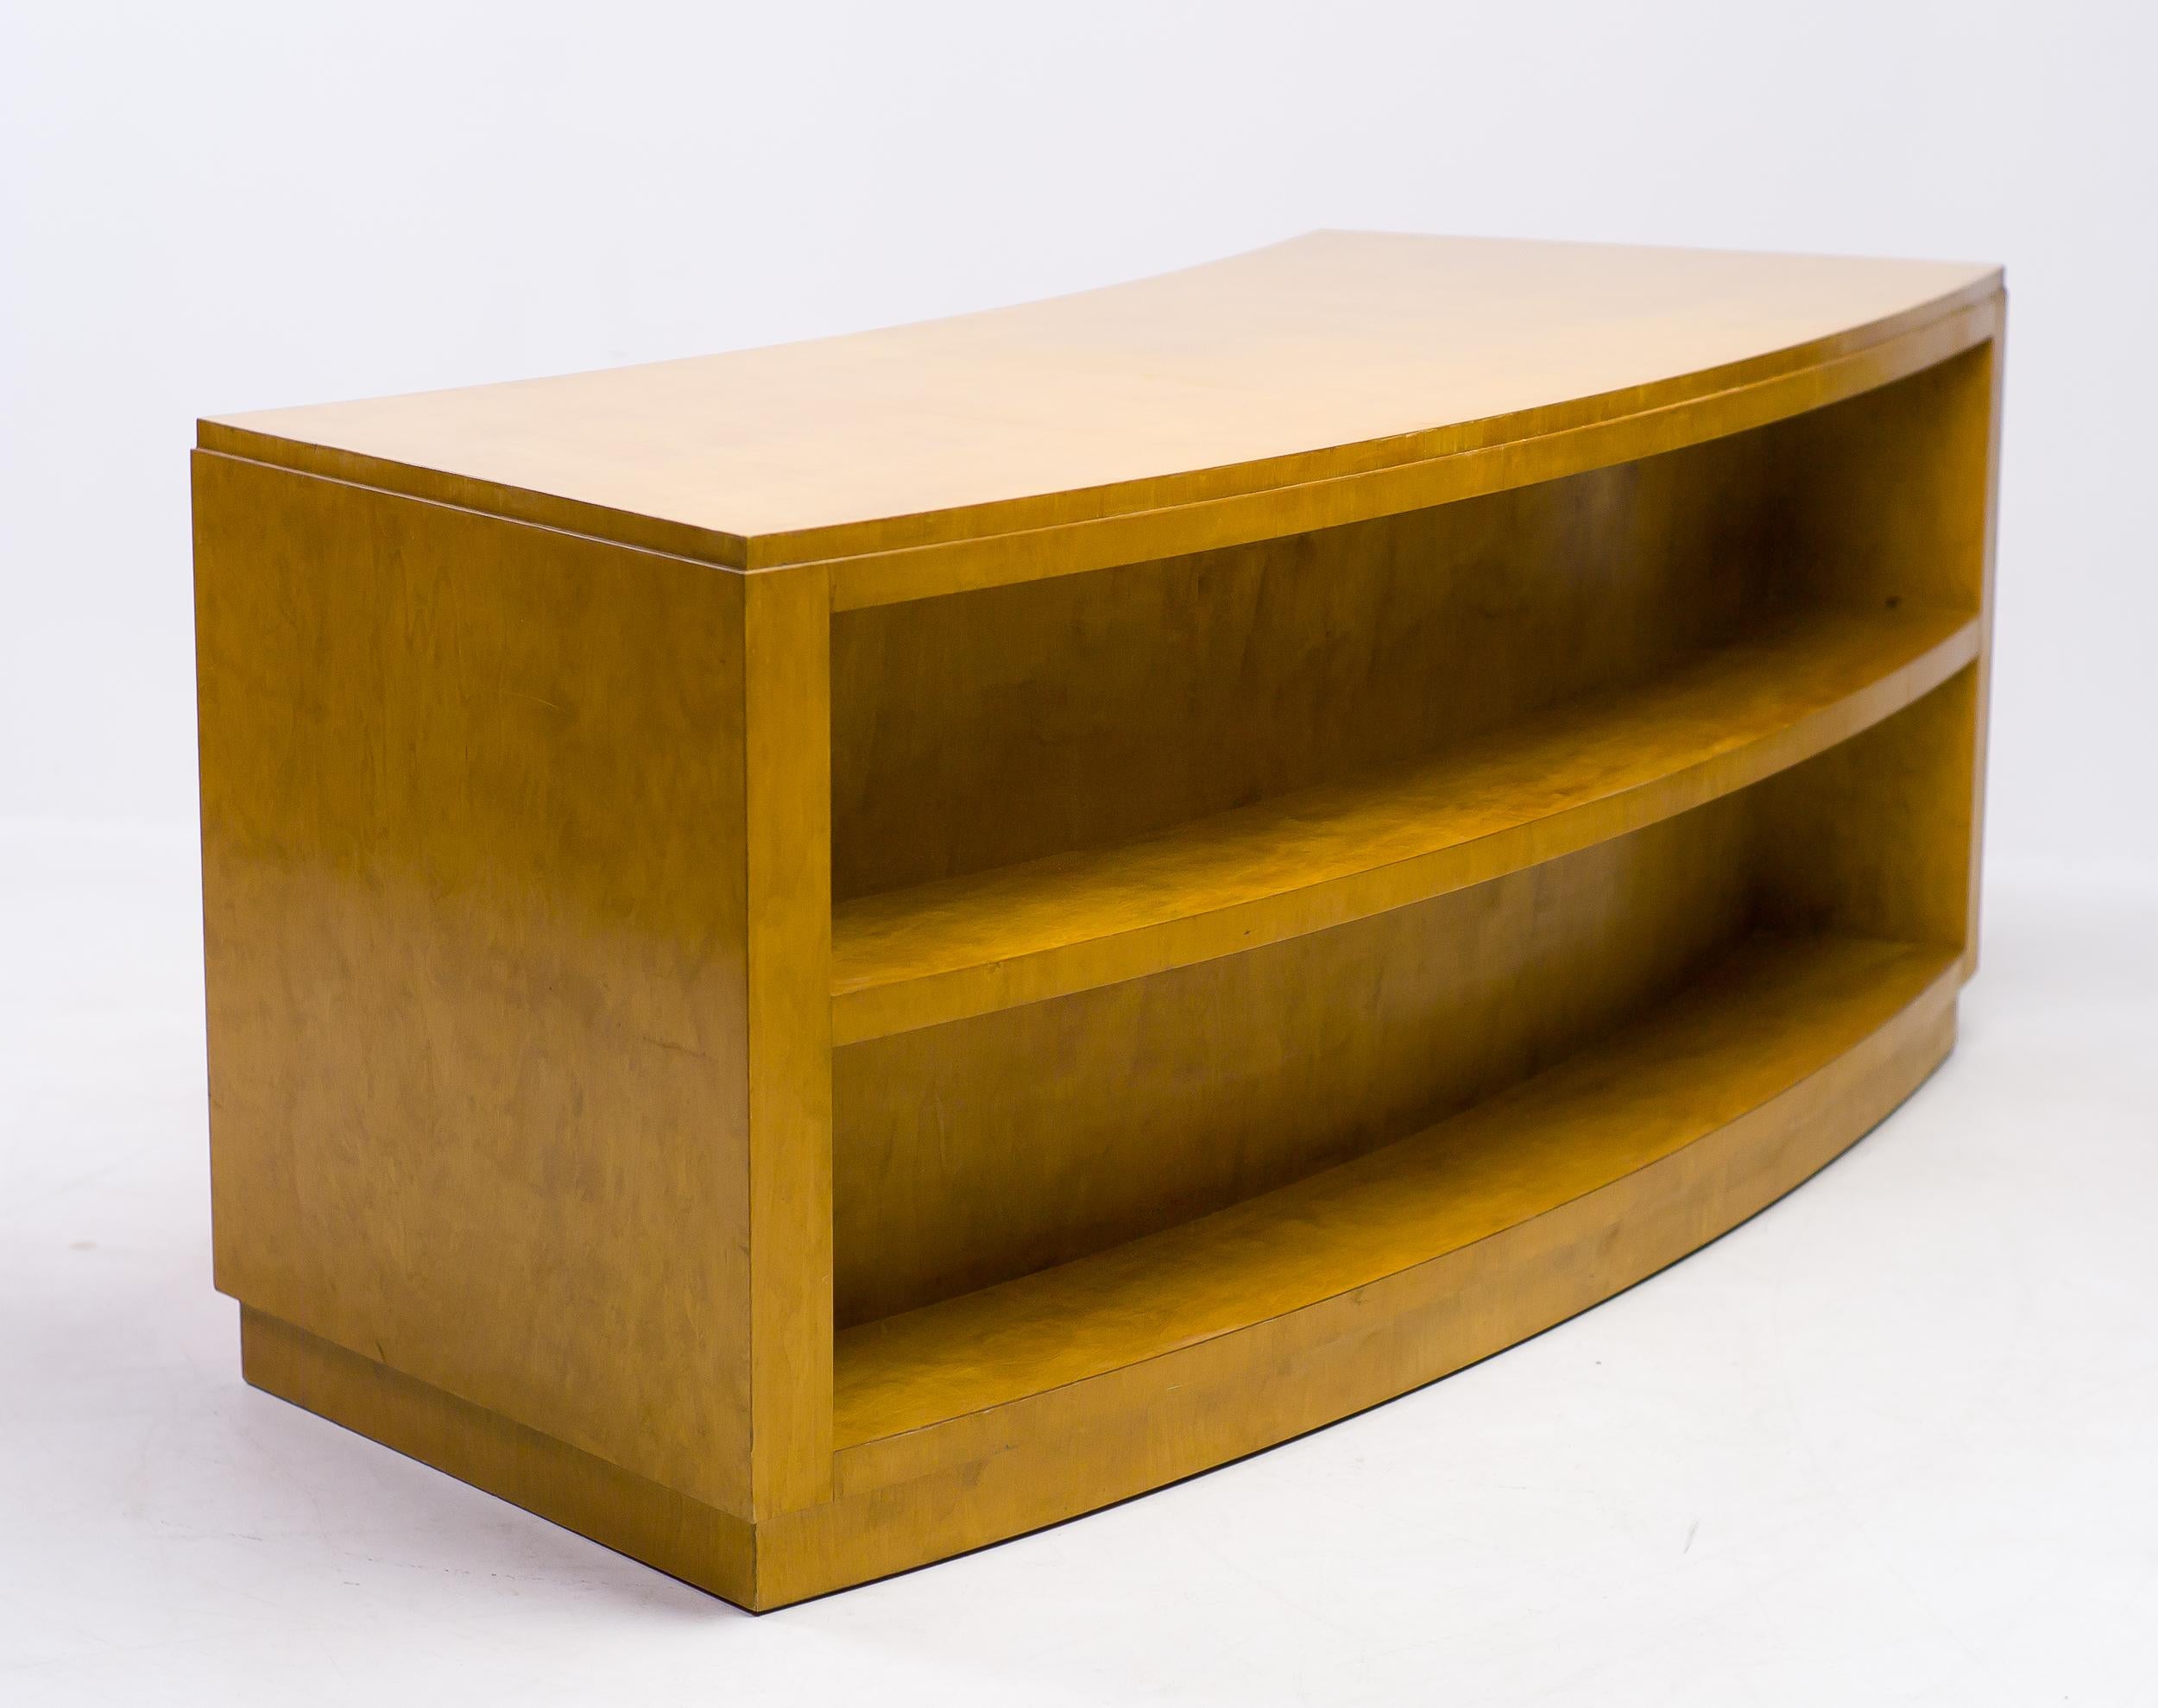 Birka Desk by Axel Einar Hjorth 6